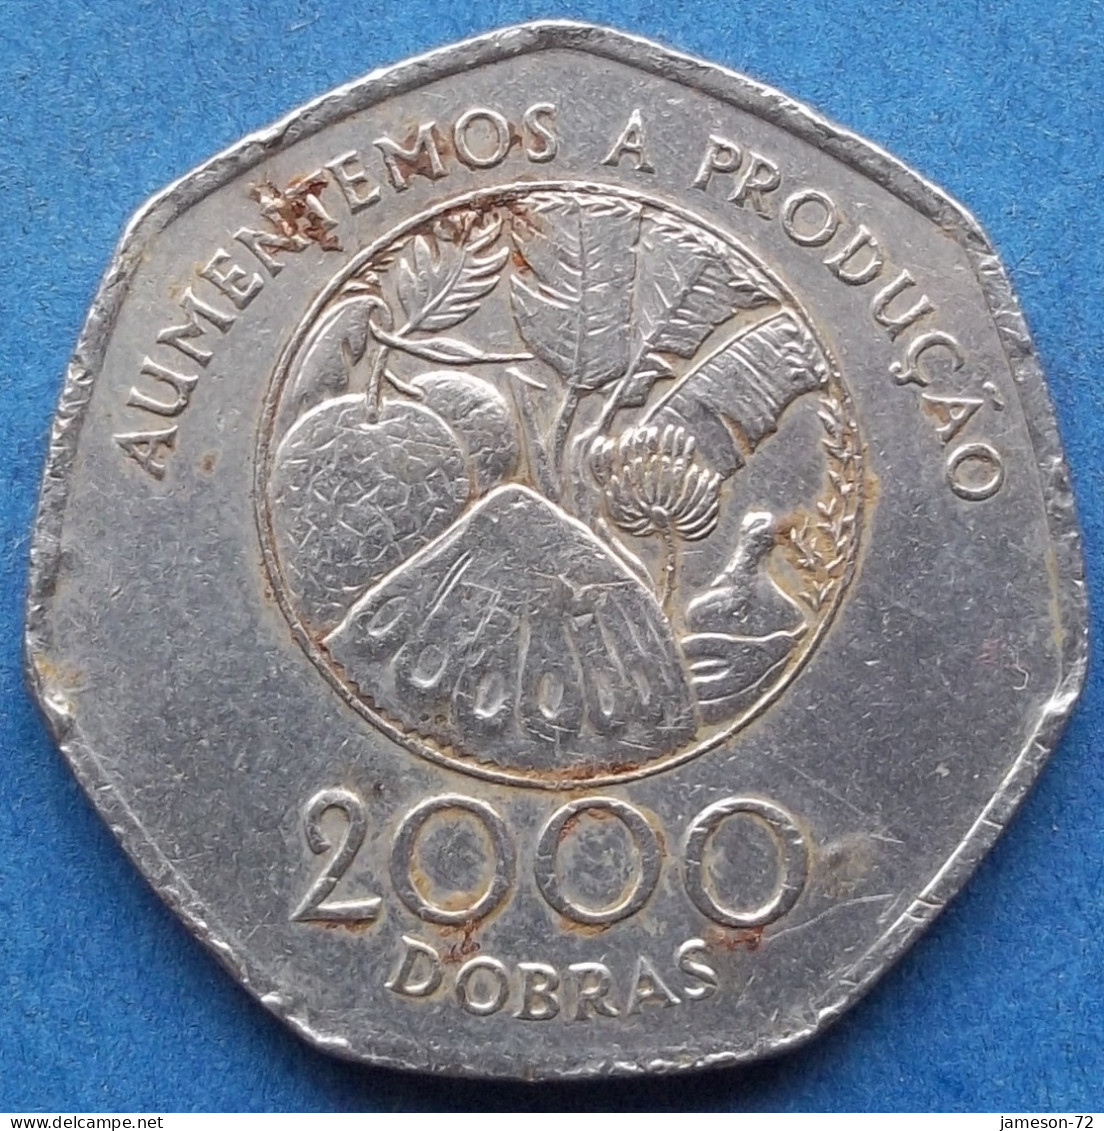 SAINT THOMAS & PRINCE ISLAND - 2000 Dobras 1997 "Tropical Food Plants" KM#91 Democratic Rep. (1975) - Edelweiss Coins - São Tomé Und Príncipe